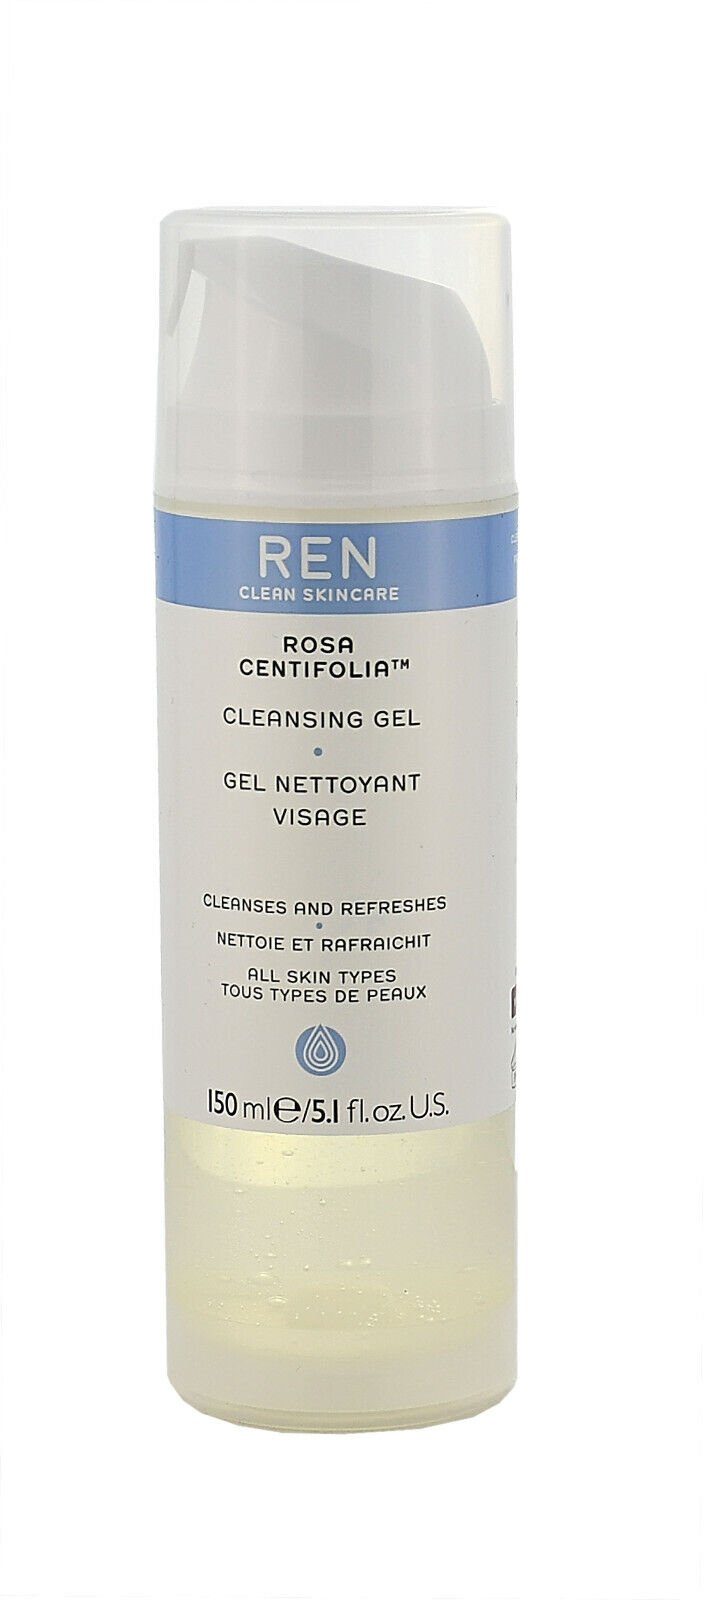 Centifolia Clean Skincare Gesichtsreinigungsgel Rosa - 150ml Cleansing REN REN Gel